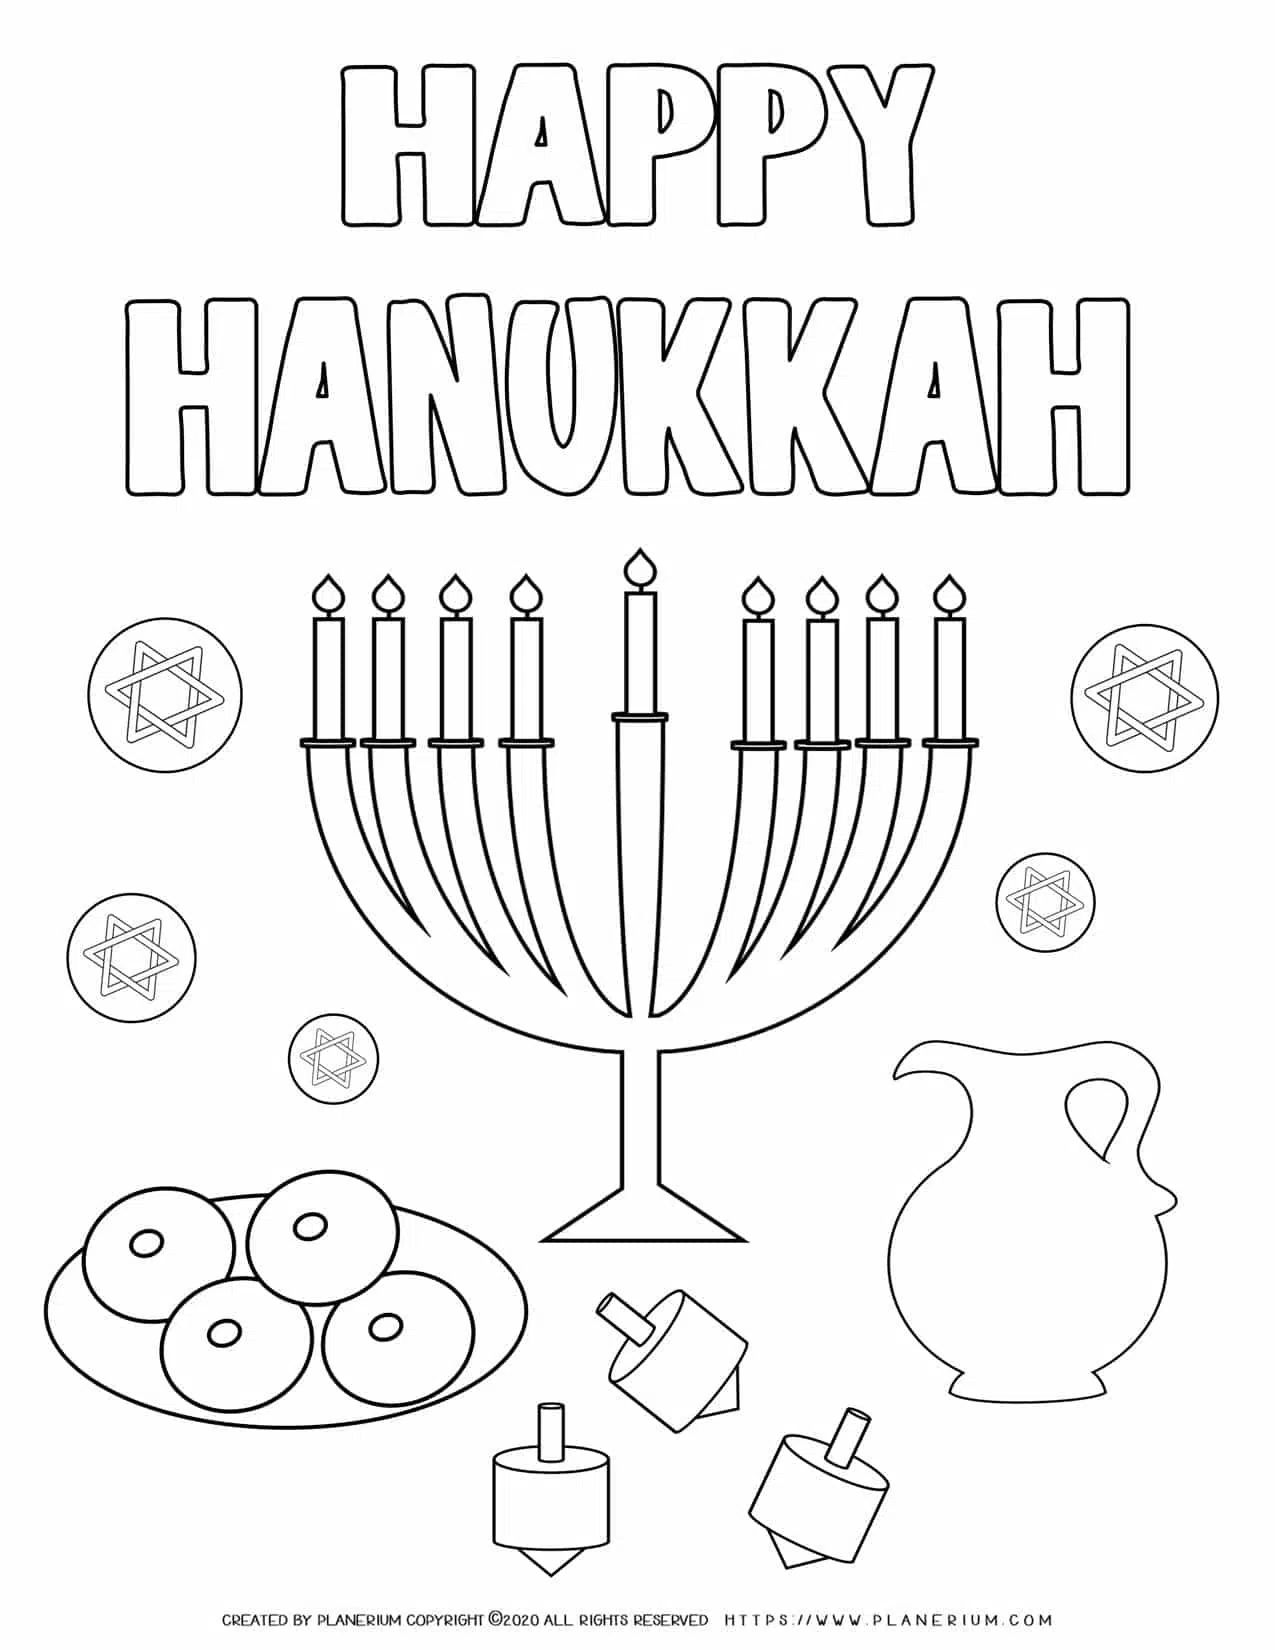 22+ Happy Hanukkah Coloring Page